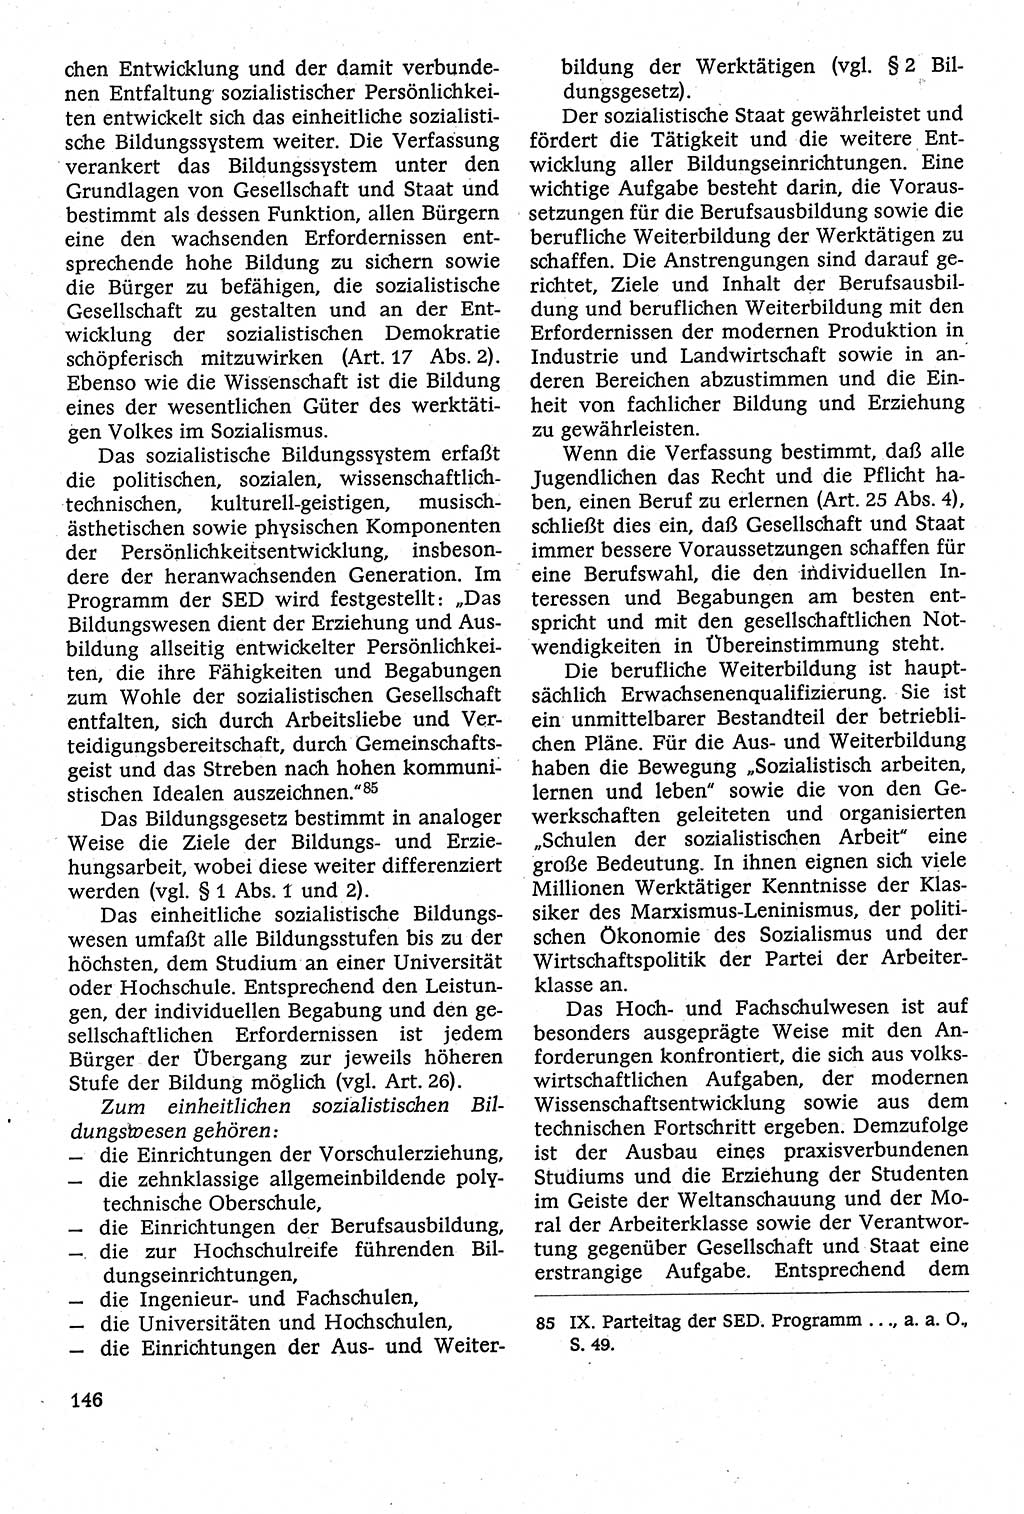 Staatsrecht der DDR [Deutsche Demokratische Republik (DDR)], Lehrbuch 1984, Seite 146 (St.-R. DDR Lb. 1984, S. 146)